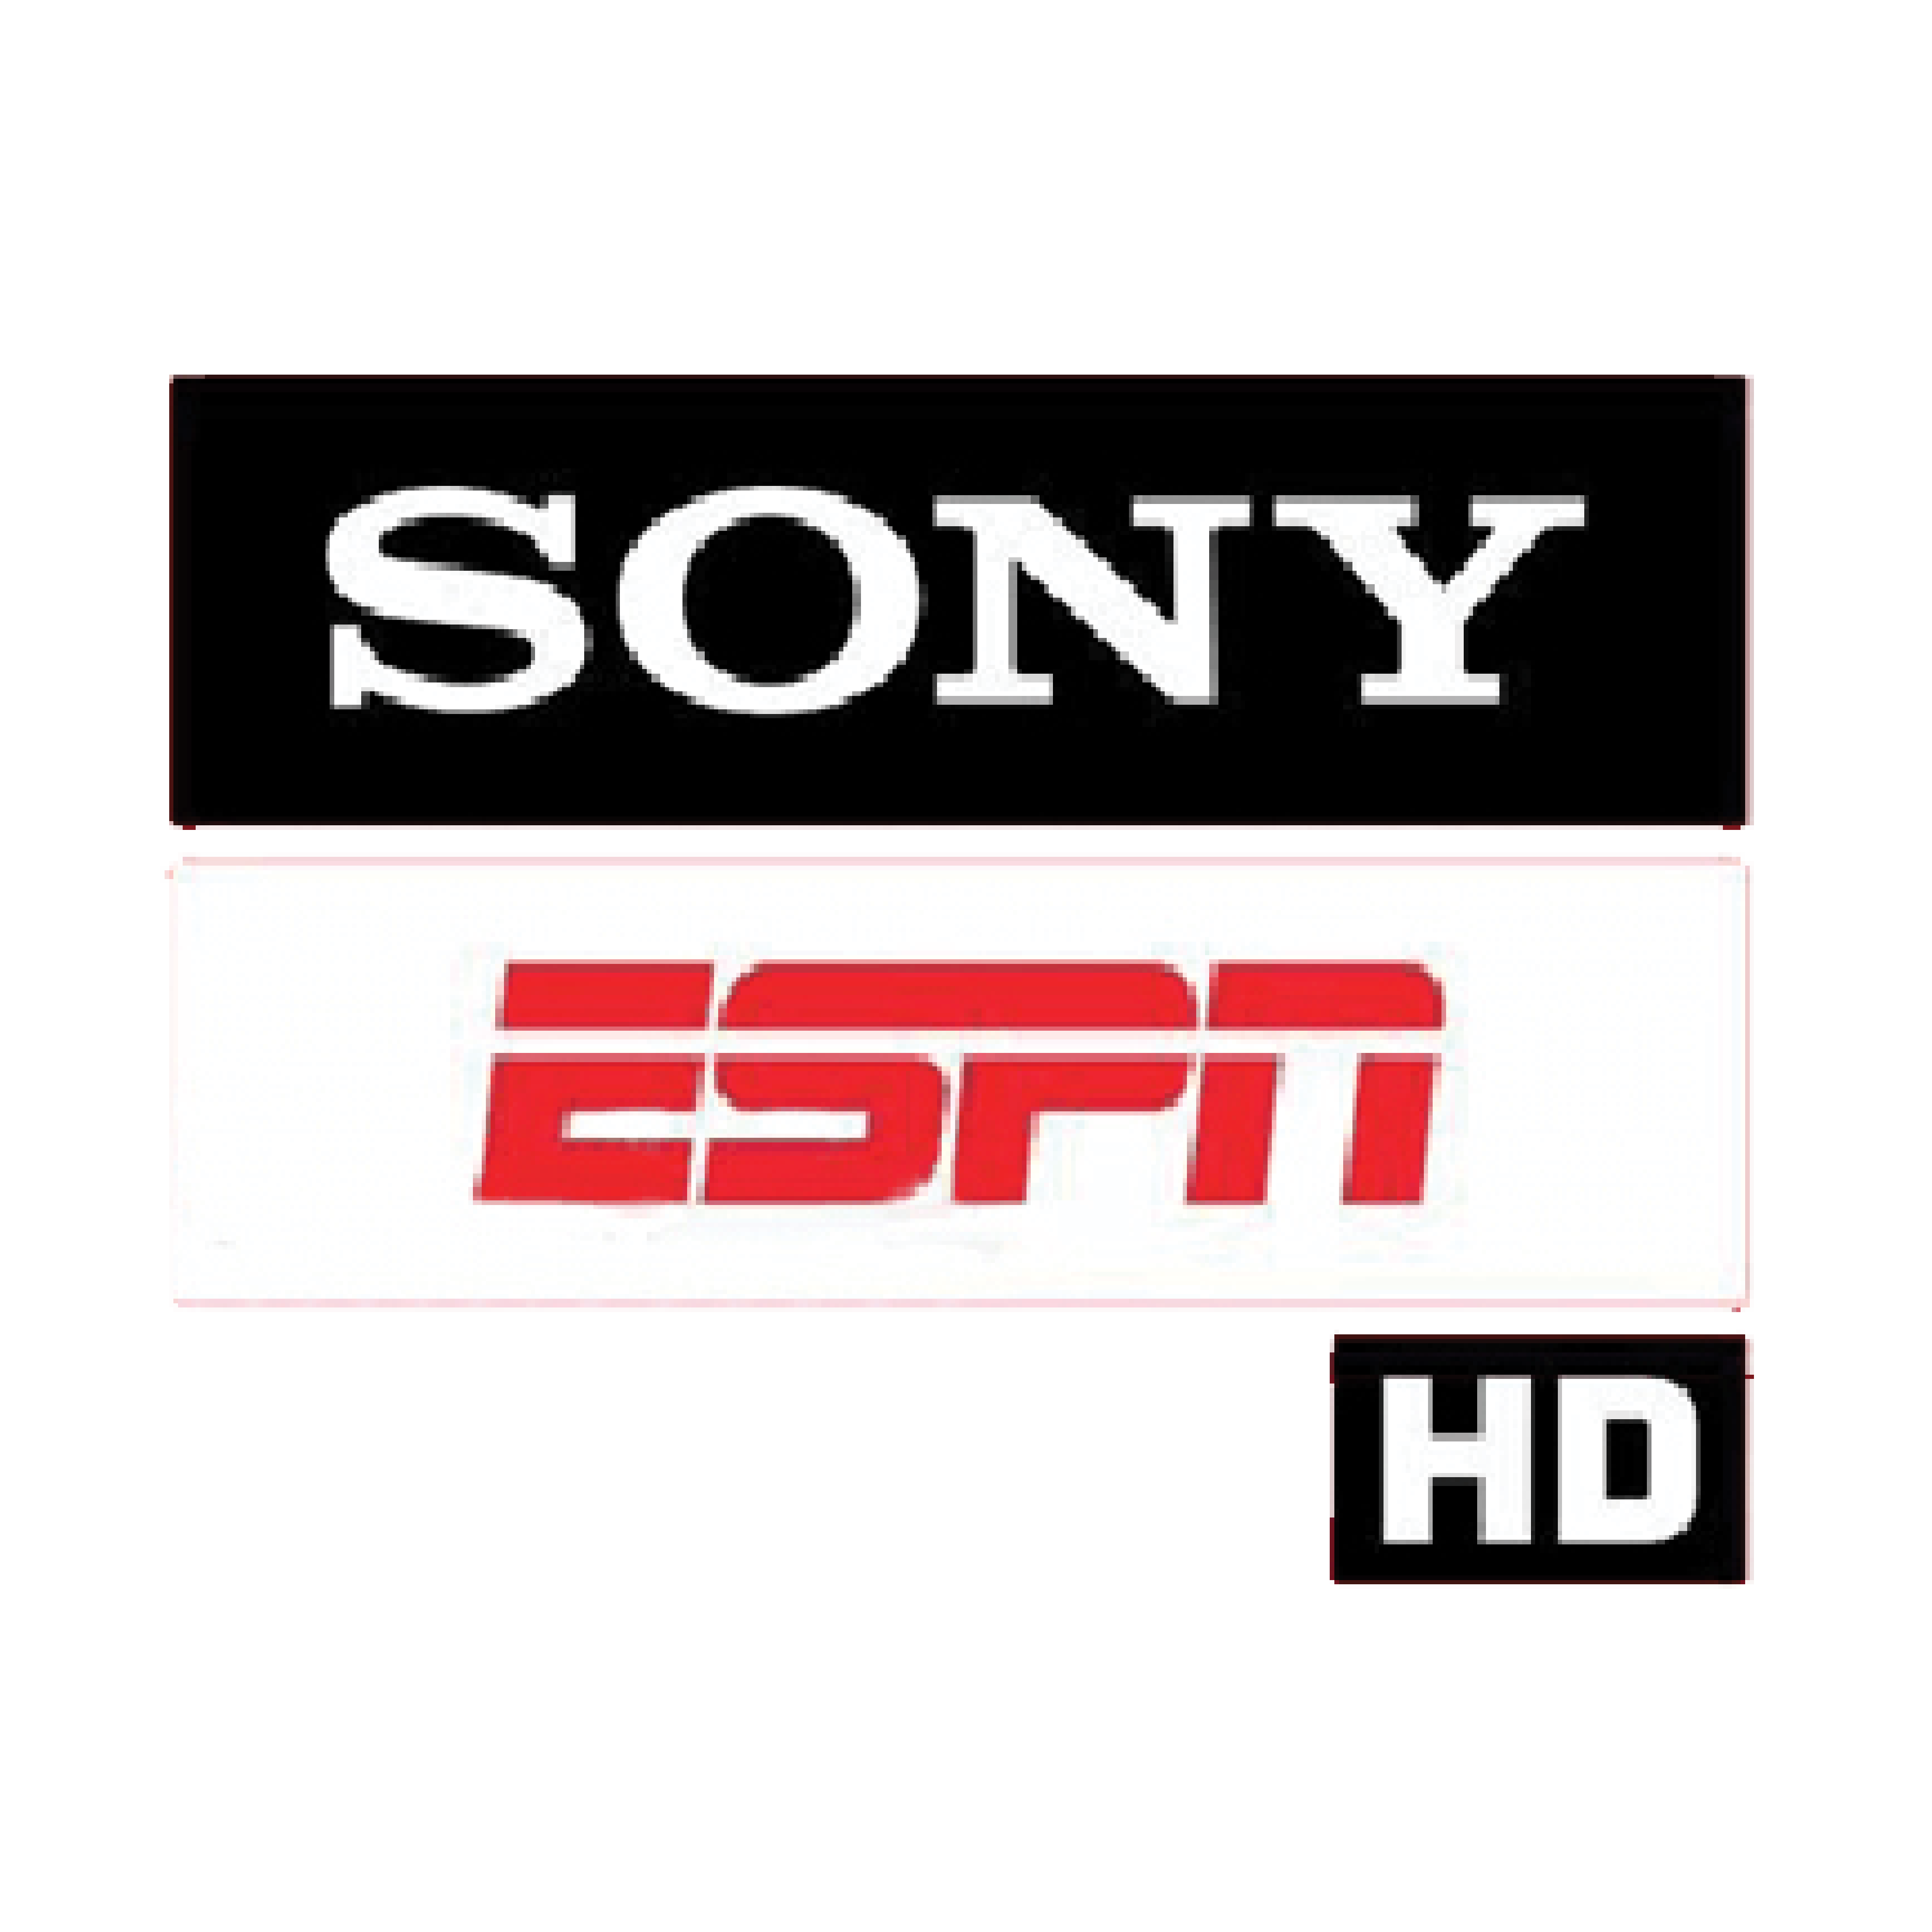 SONY ESPN HD